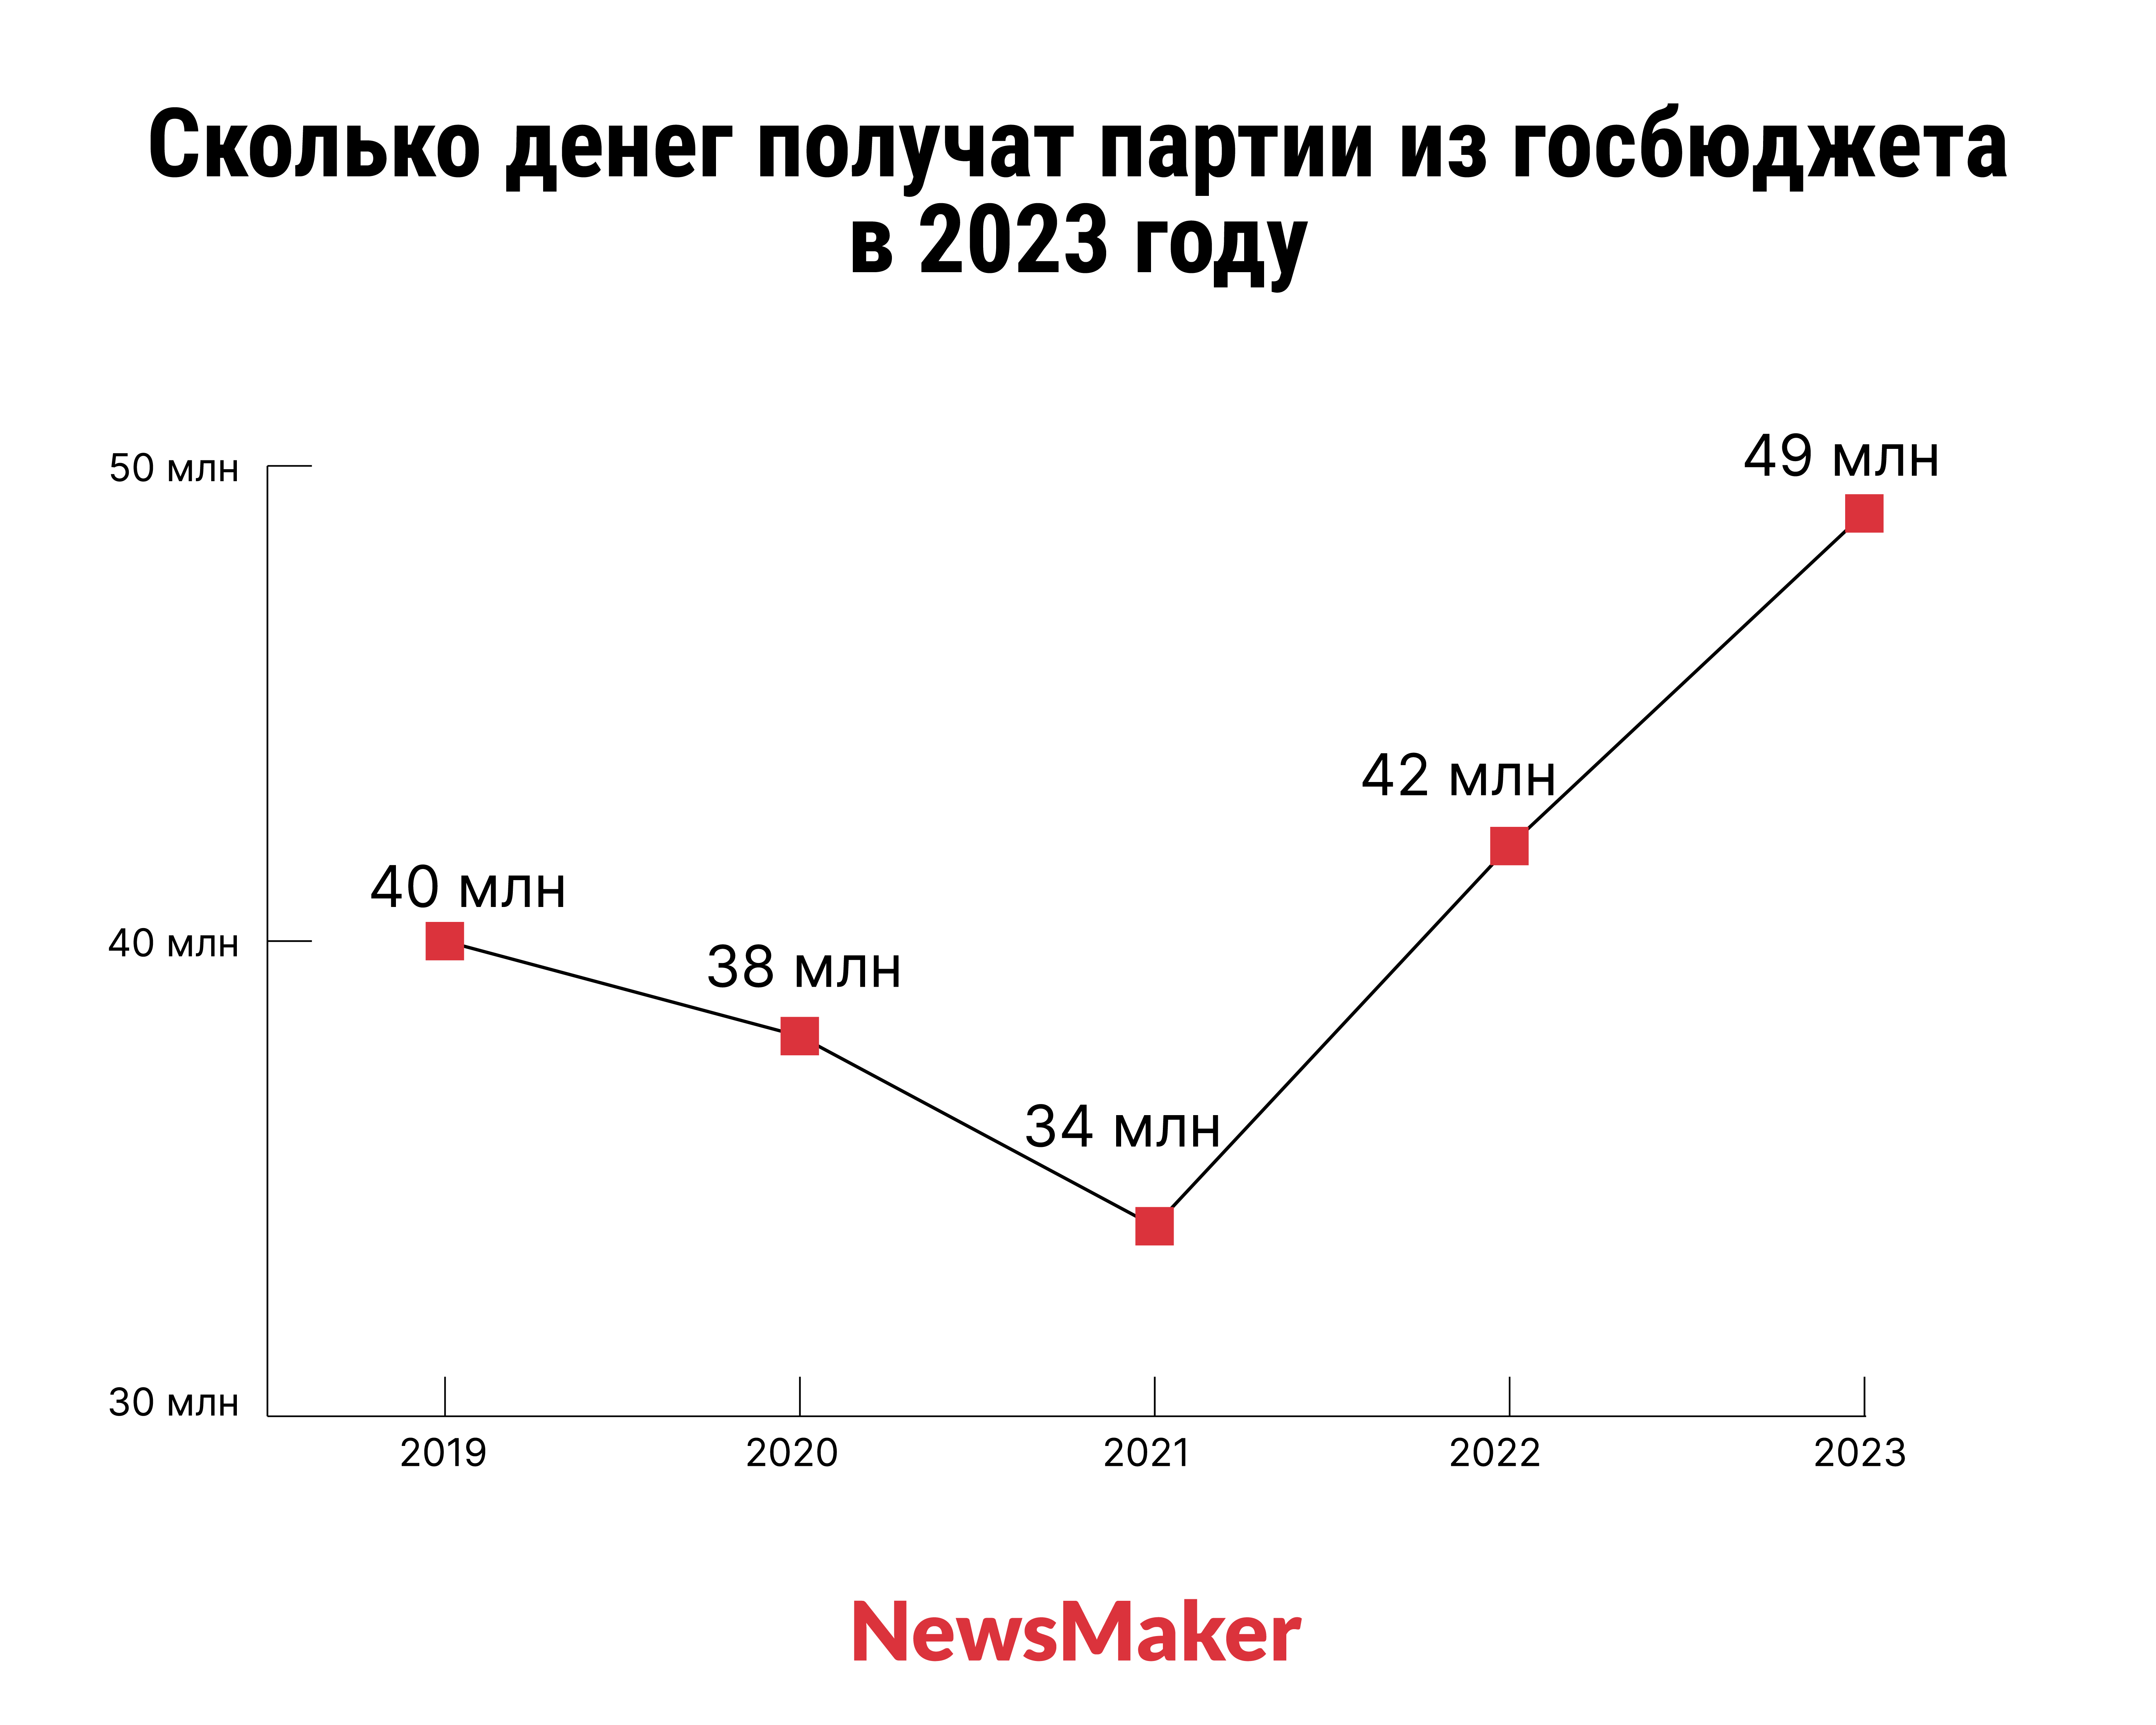 Цена за голос. Сколько получат партии Молдовы от государства в 2023 году